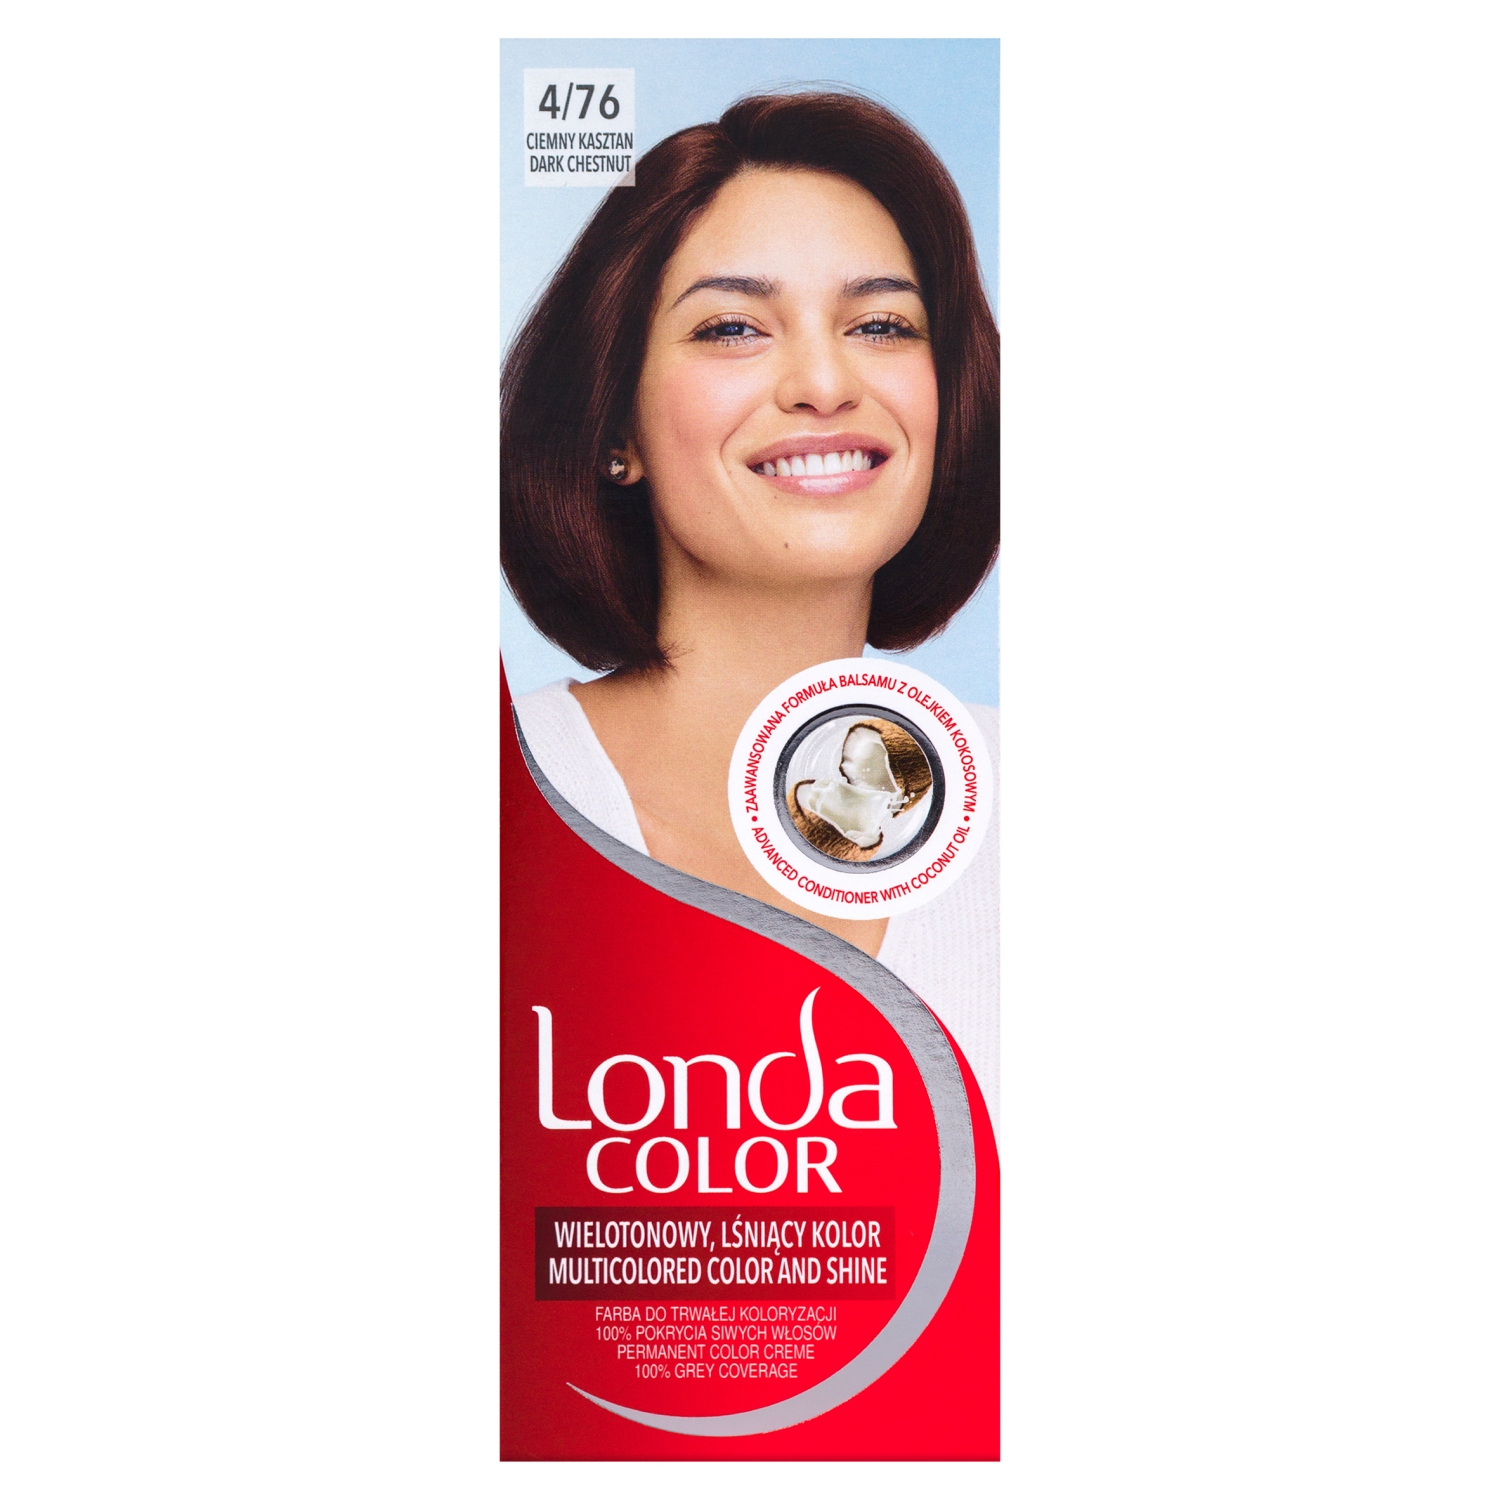 Крем-краска для волос 4/76 темно-каштановый Londa Color, 1 упаковка